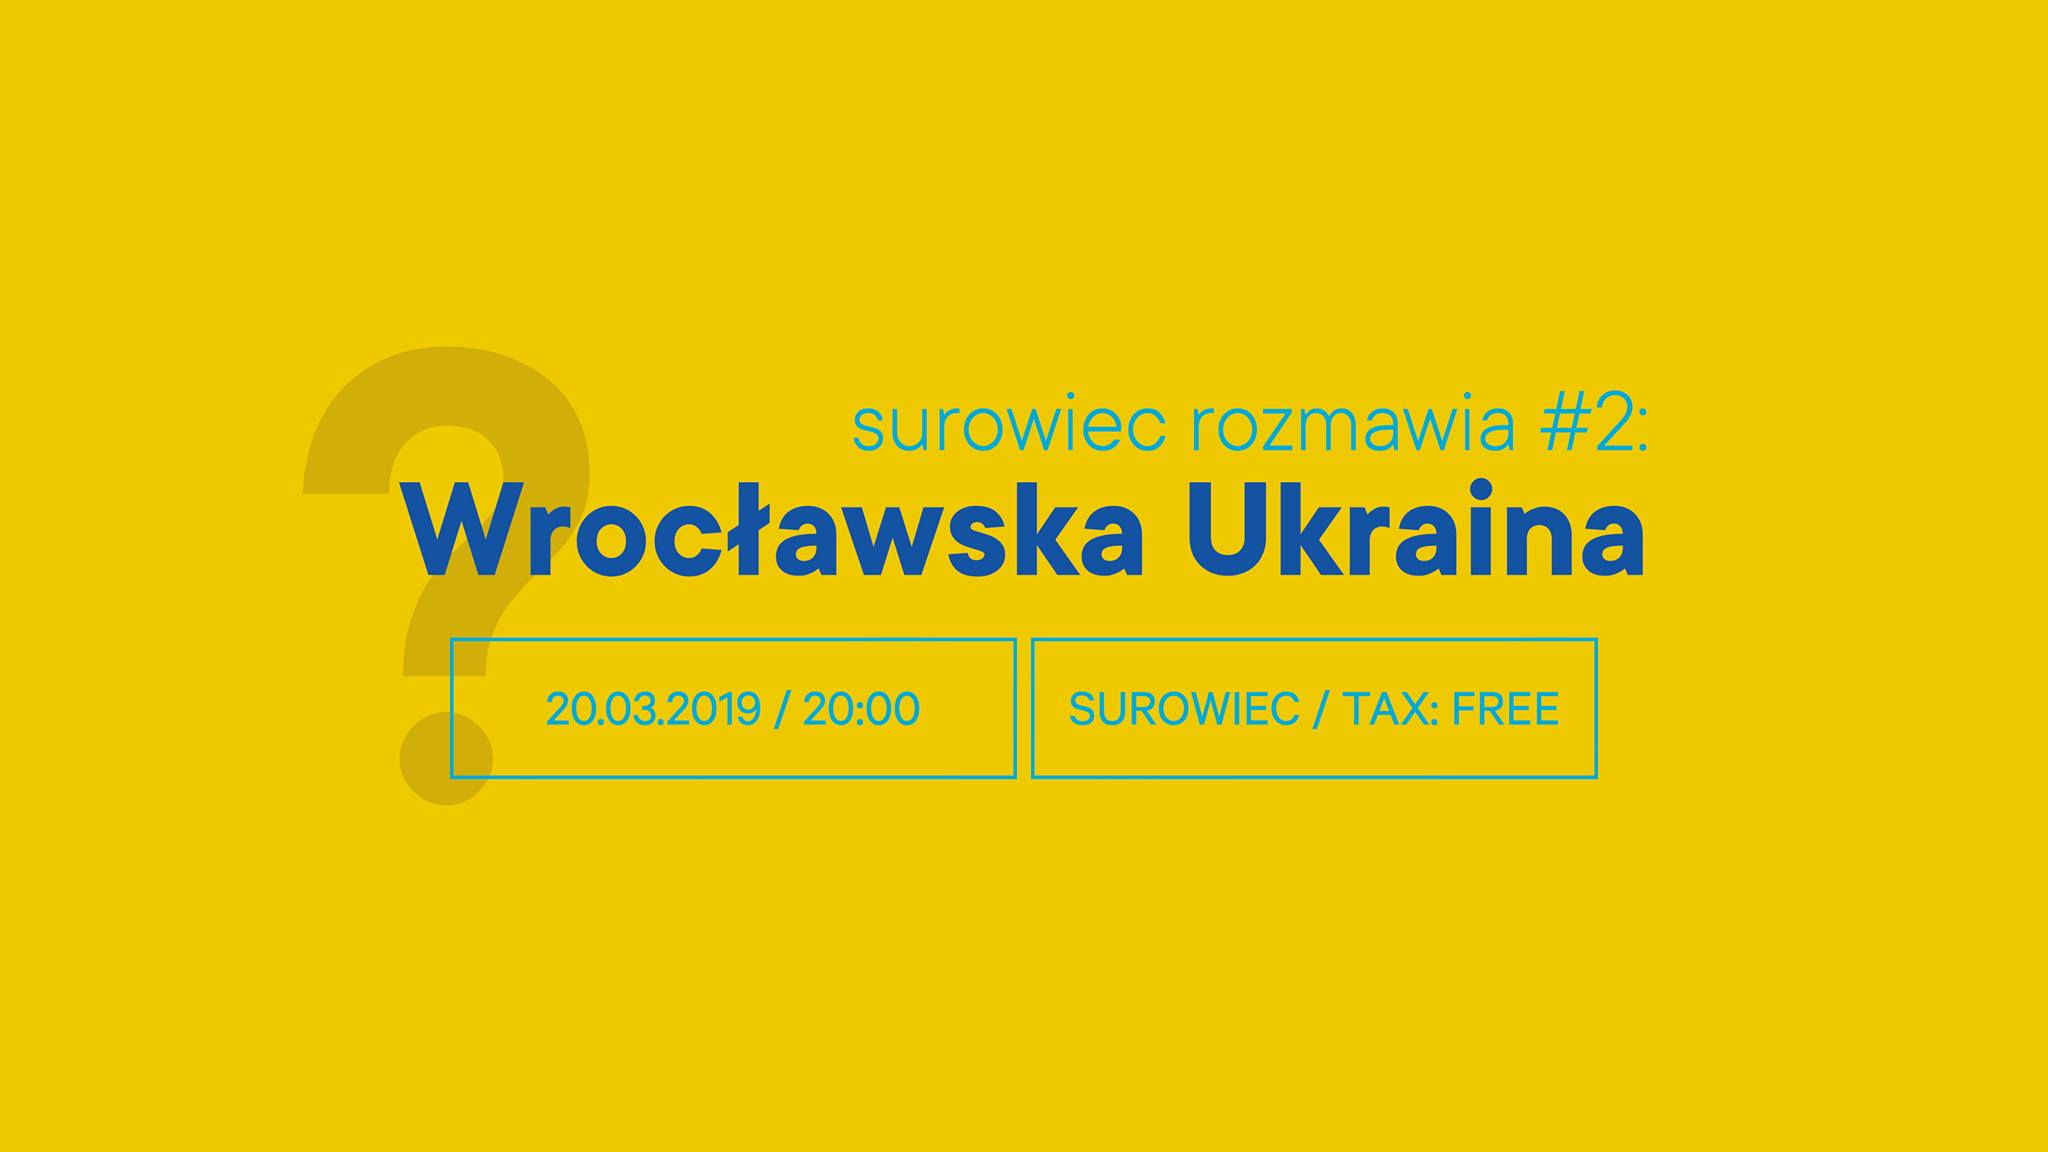 Surowiec rozmawia #2. Wrocławska Ukraina